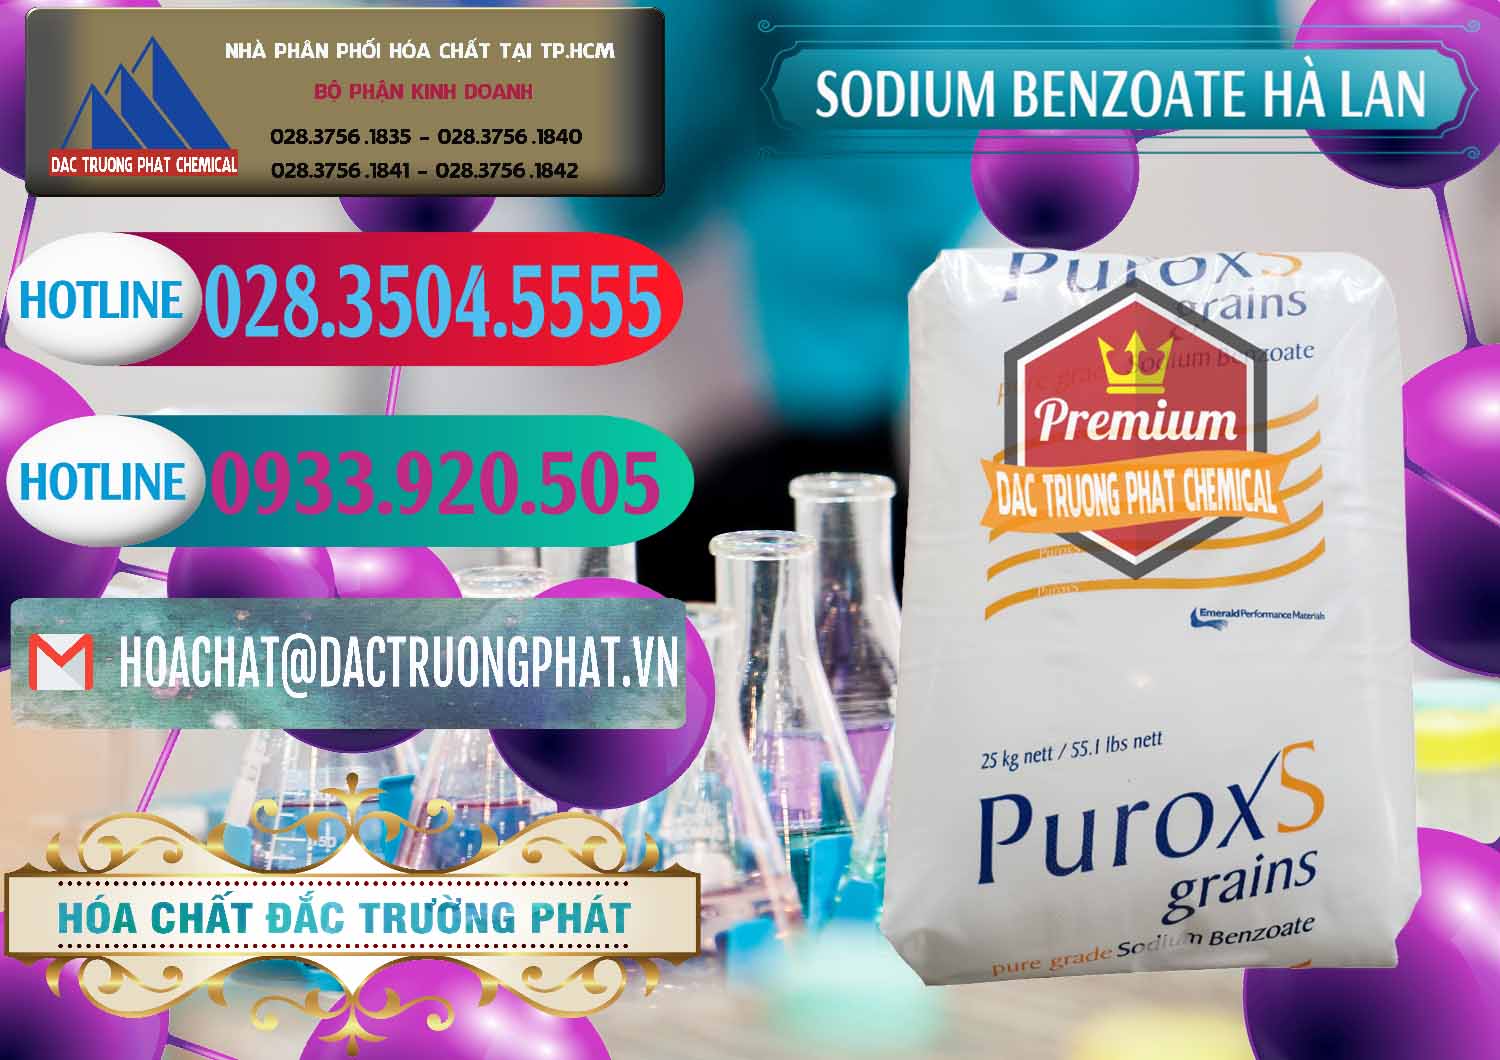 Nơi chuyên bán ( cung ứng ) Sodium Benzoate - Mốc Bột Puroxs Hà Lan Netherlands - 0467 - Nơi phân phối và kinh doanh hóa chất tại TP.HCM - truongphat.vn